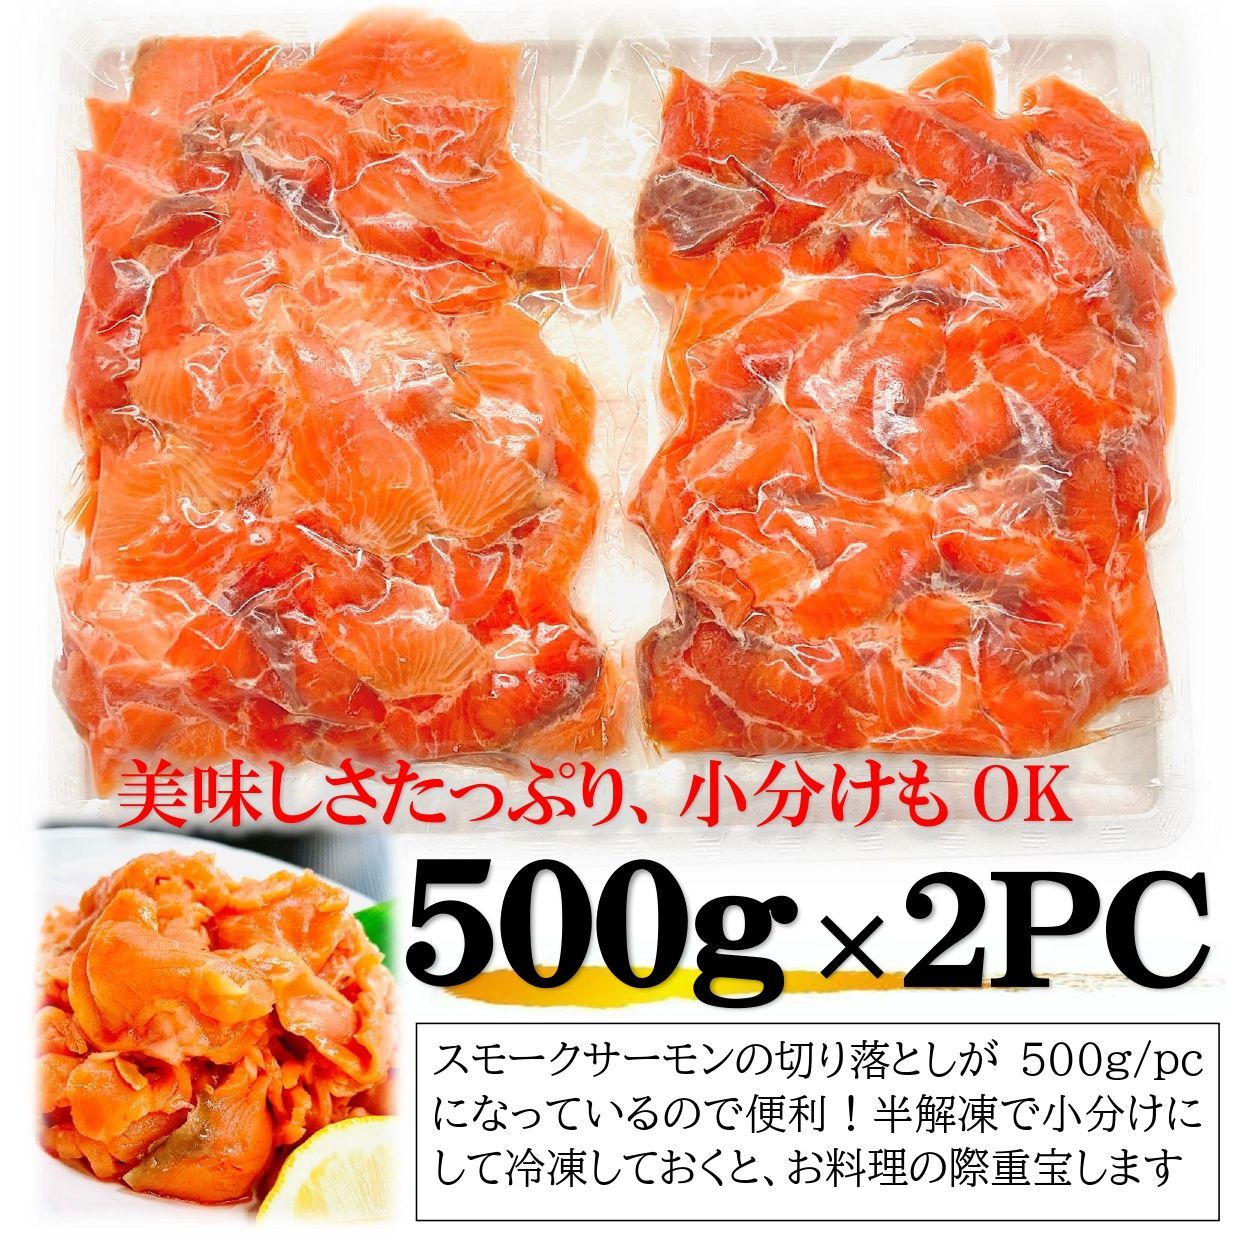 牡蠣鮮魚仲卸かきや　スモークサーモン切り落とし500g×2PCルース(端材)でも味わいは正規品と同じ　メルカリ